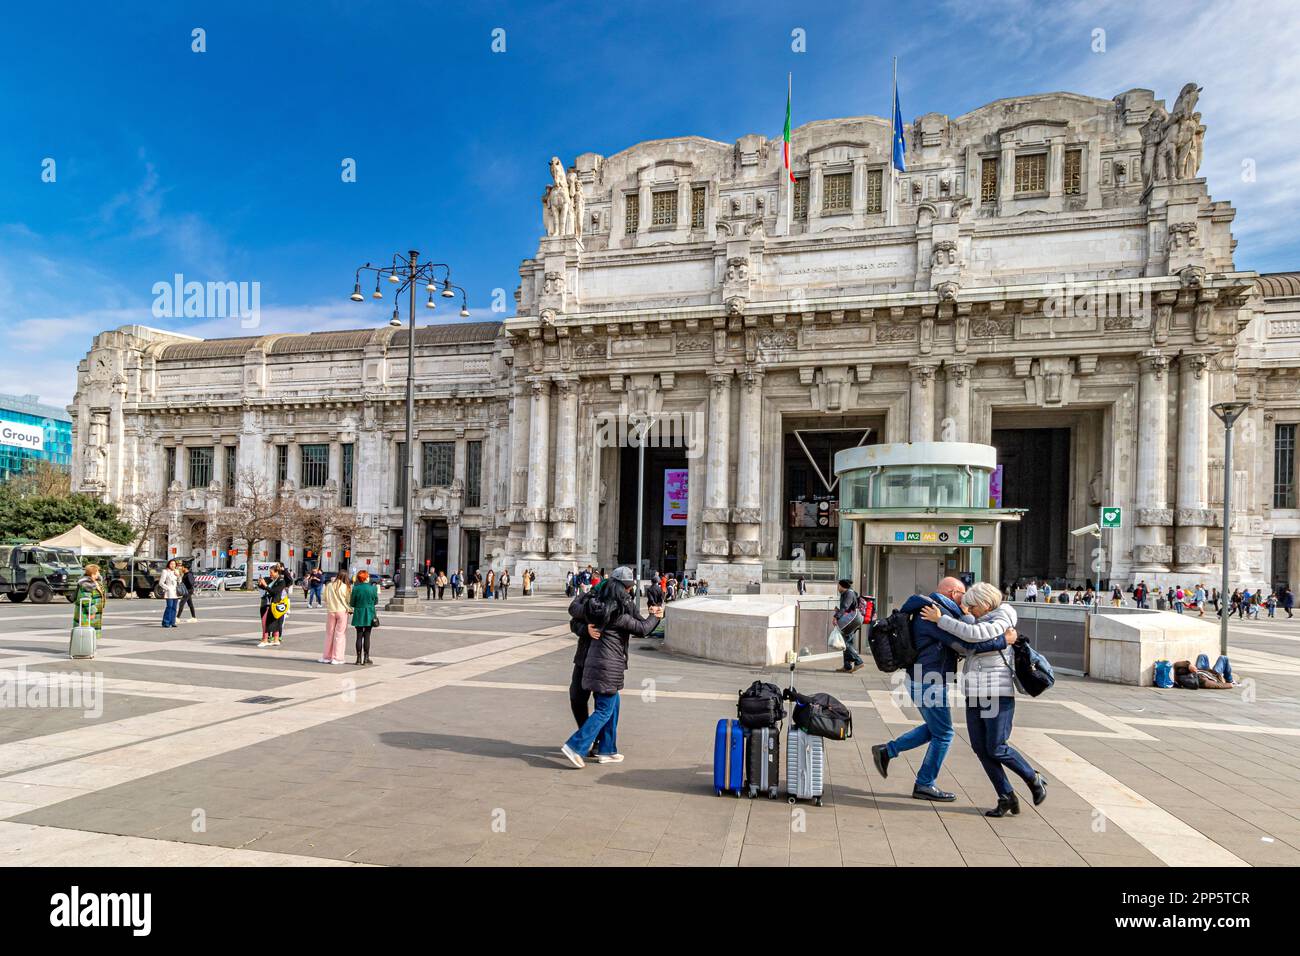 Un couple dansant devant le grand extérieur de la gare centrale de Milan, sur la Piazza Duca d'Aoste, Milan, Italie Banque D'Images